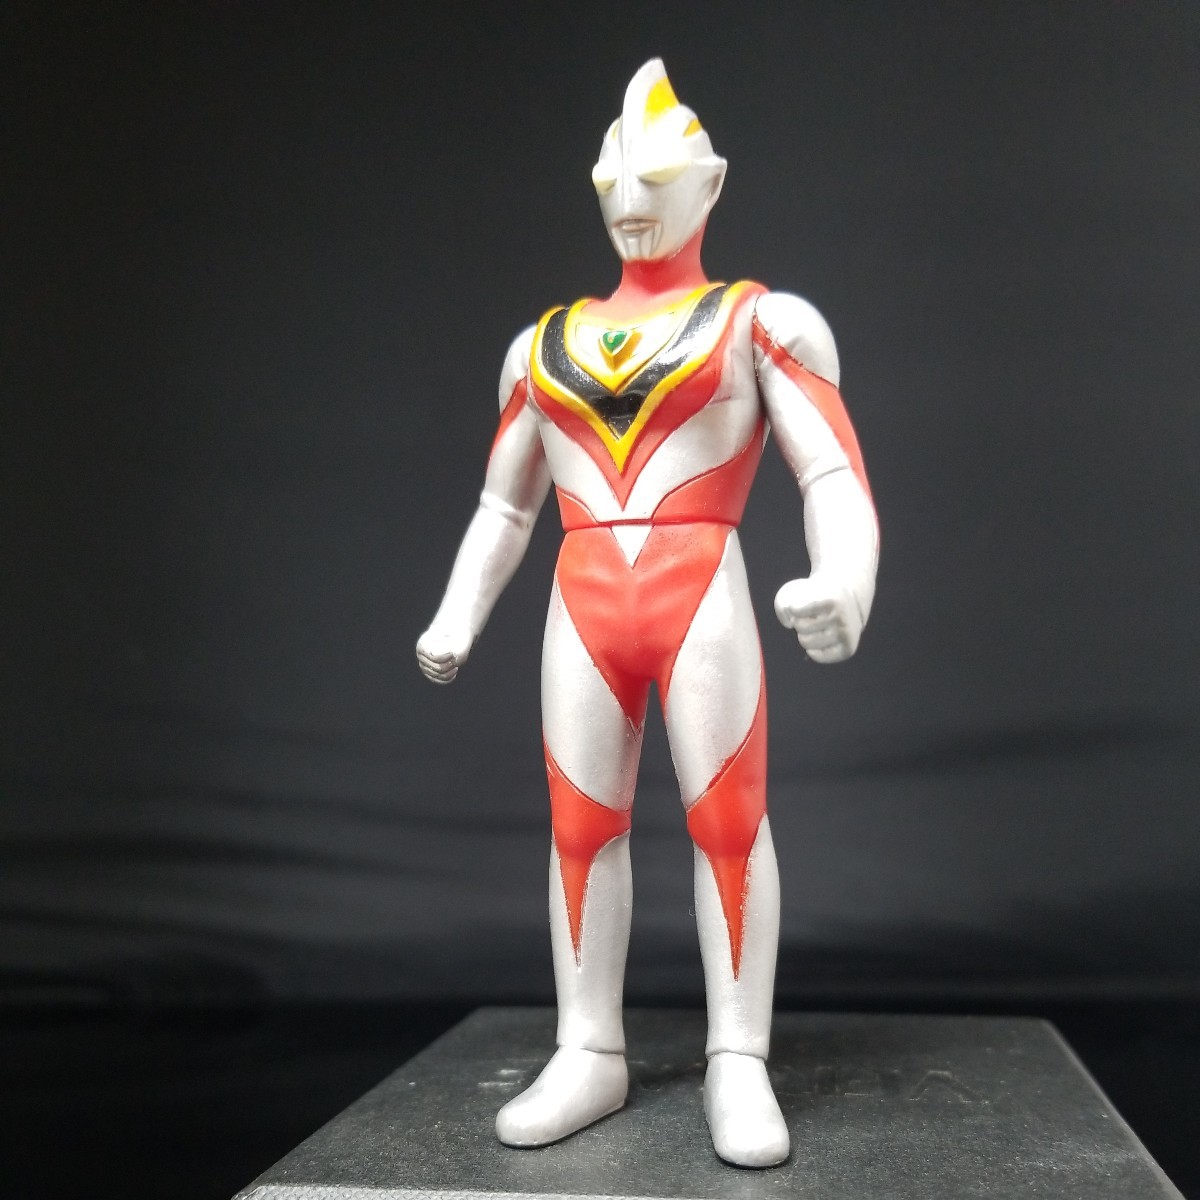  Bandai иен . Pro подлинная вещь Ultraman Tiga Mebius Dyna Gaya 4 вида комплект изображение . полностью перед ставкой. обязательно описание товара . прочитайте пожалуйста 